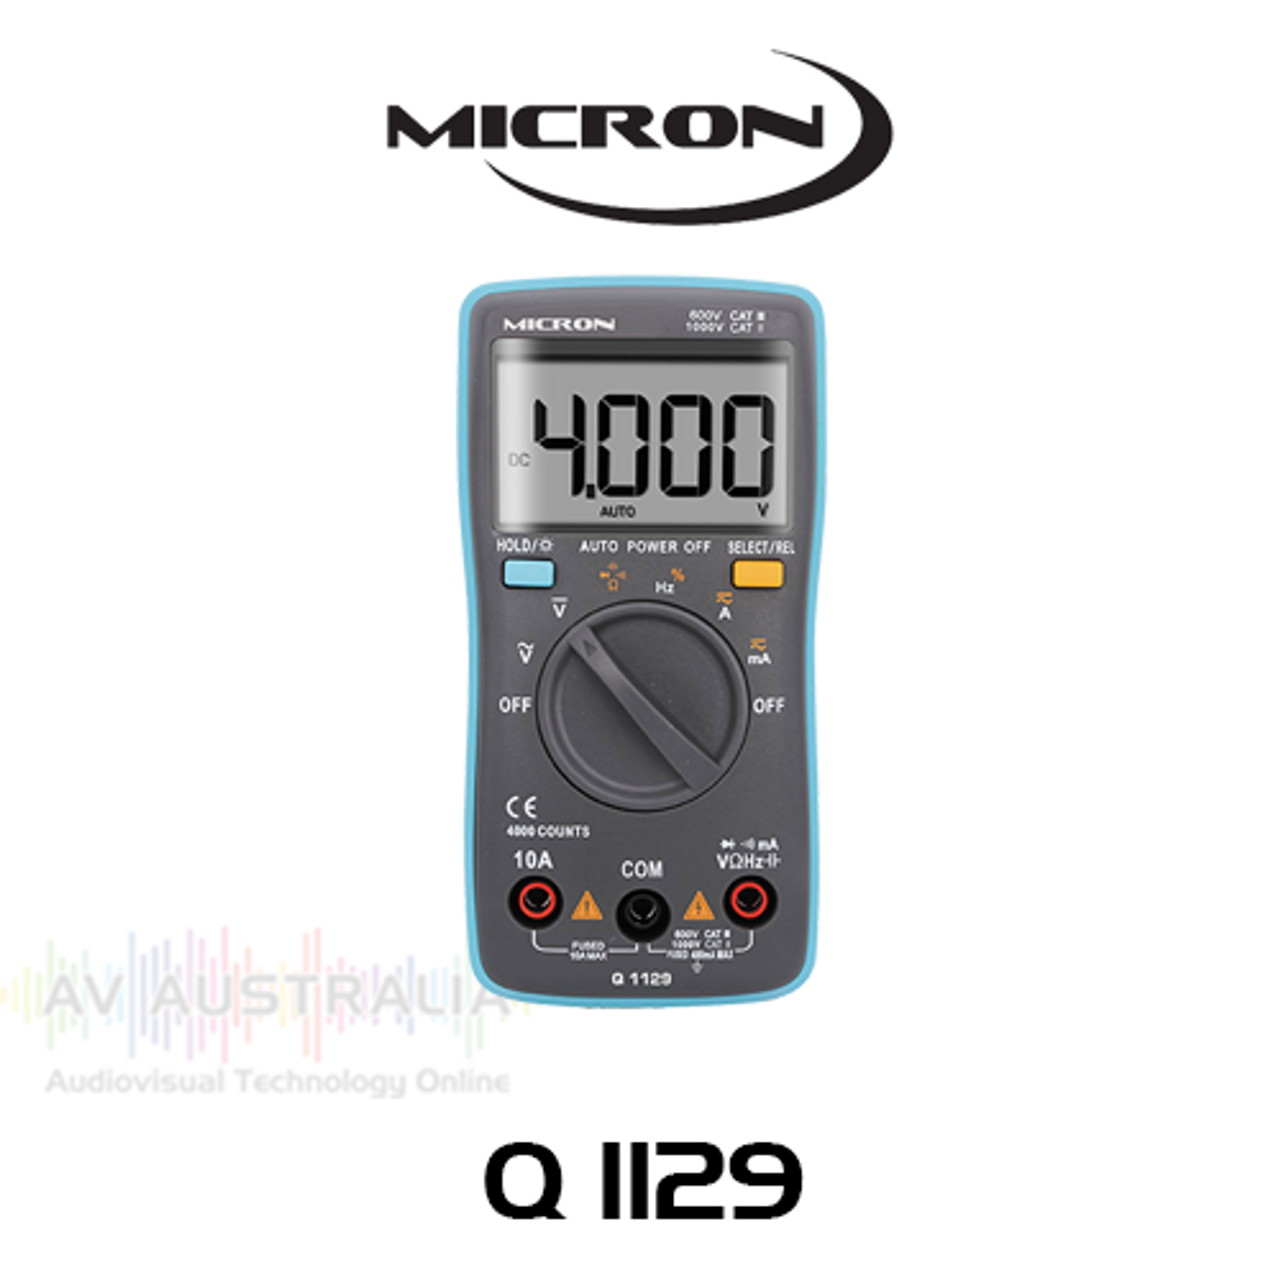 Micron Q1129 Auto-Ranging Digital Multimeter